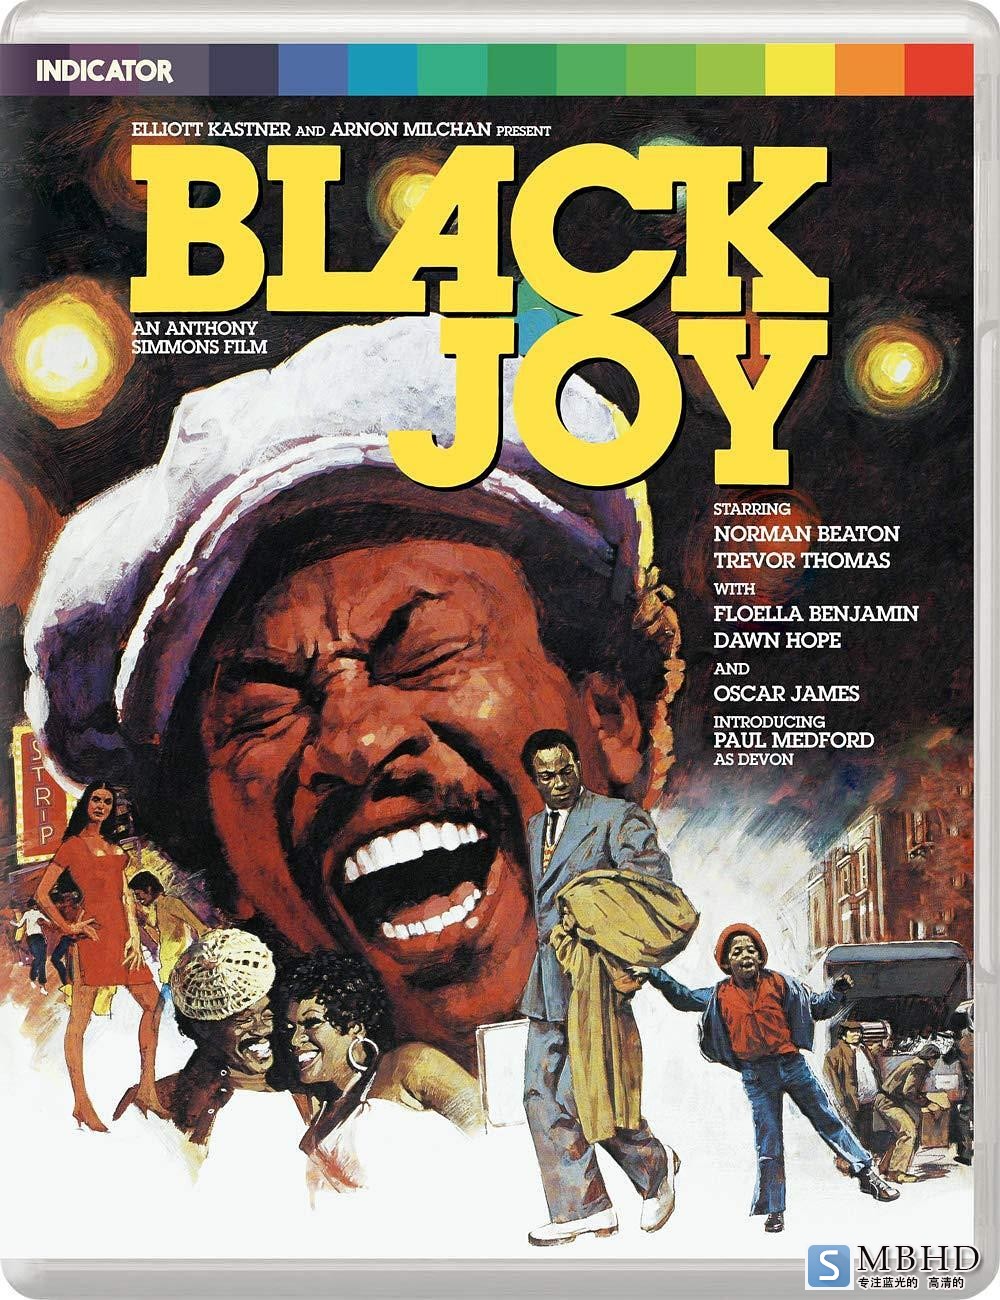  Black.Joy.1977.1080p.BluRay.REMUX.AVC.LPCM.1.0-FGT 24.84GB-1.png